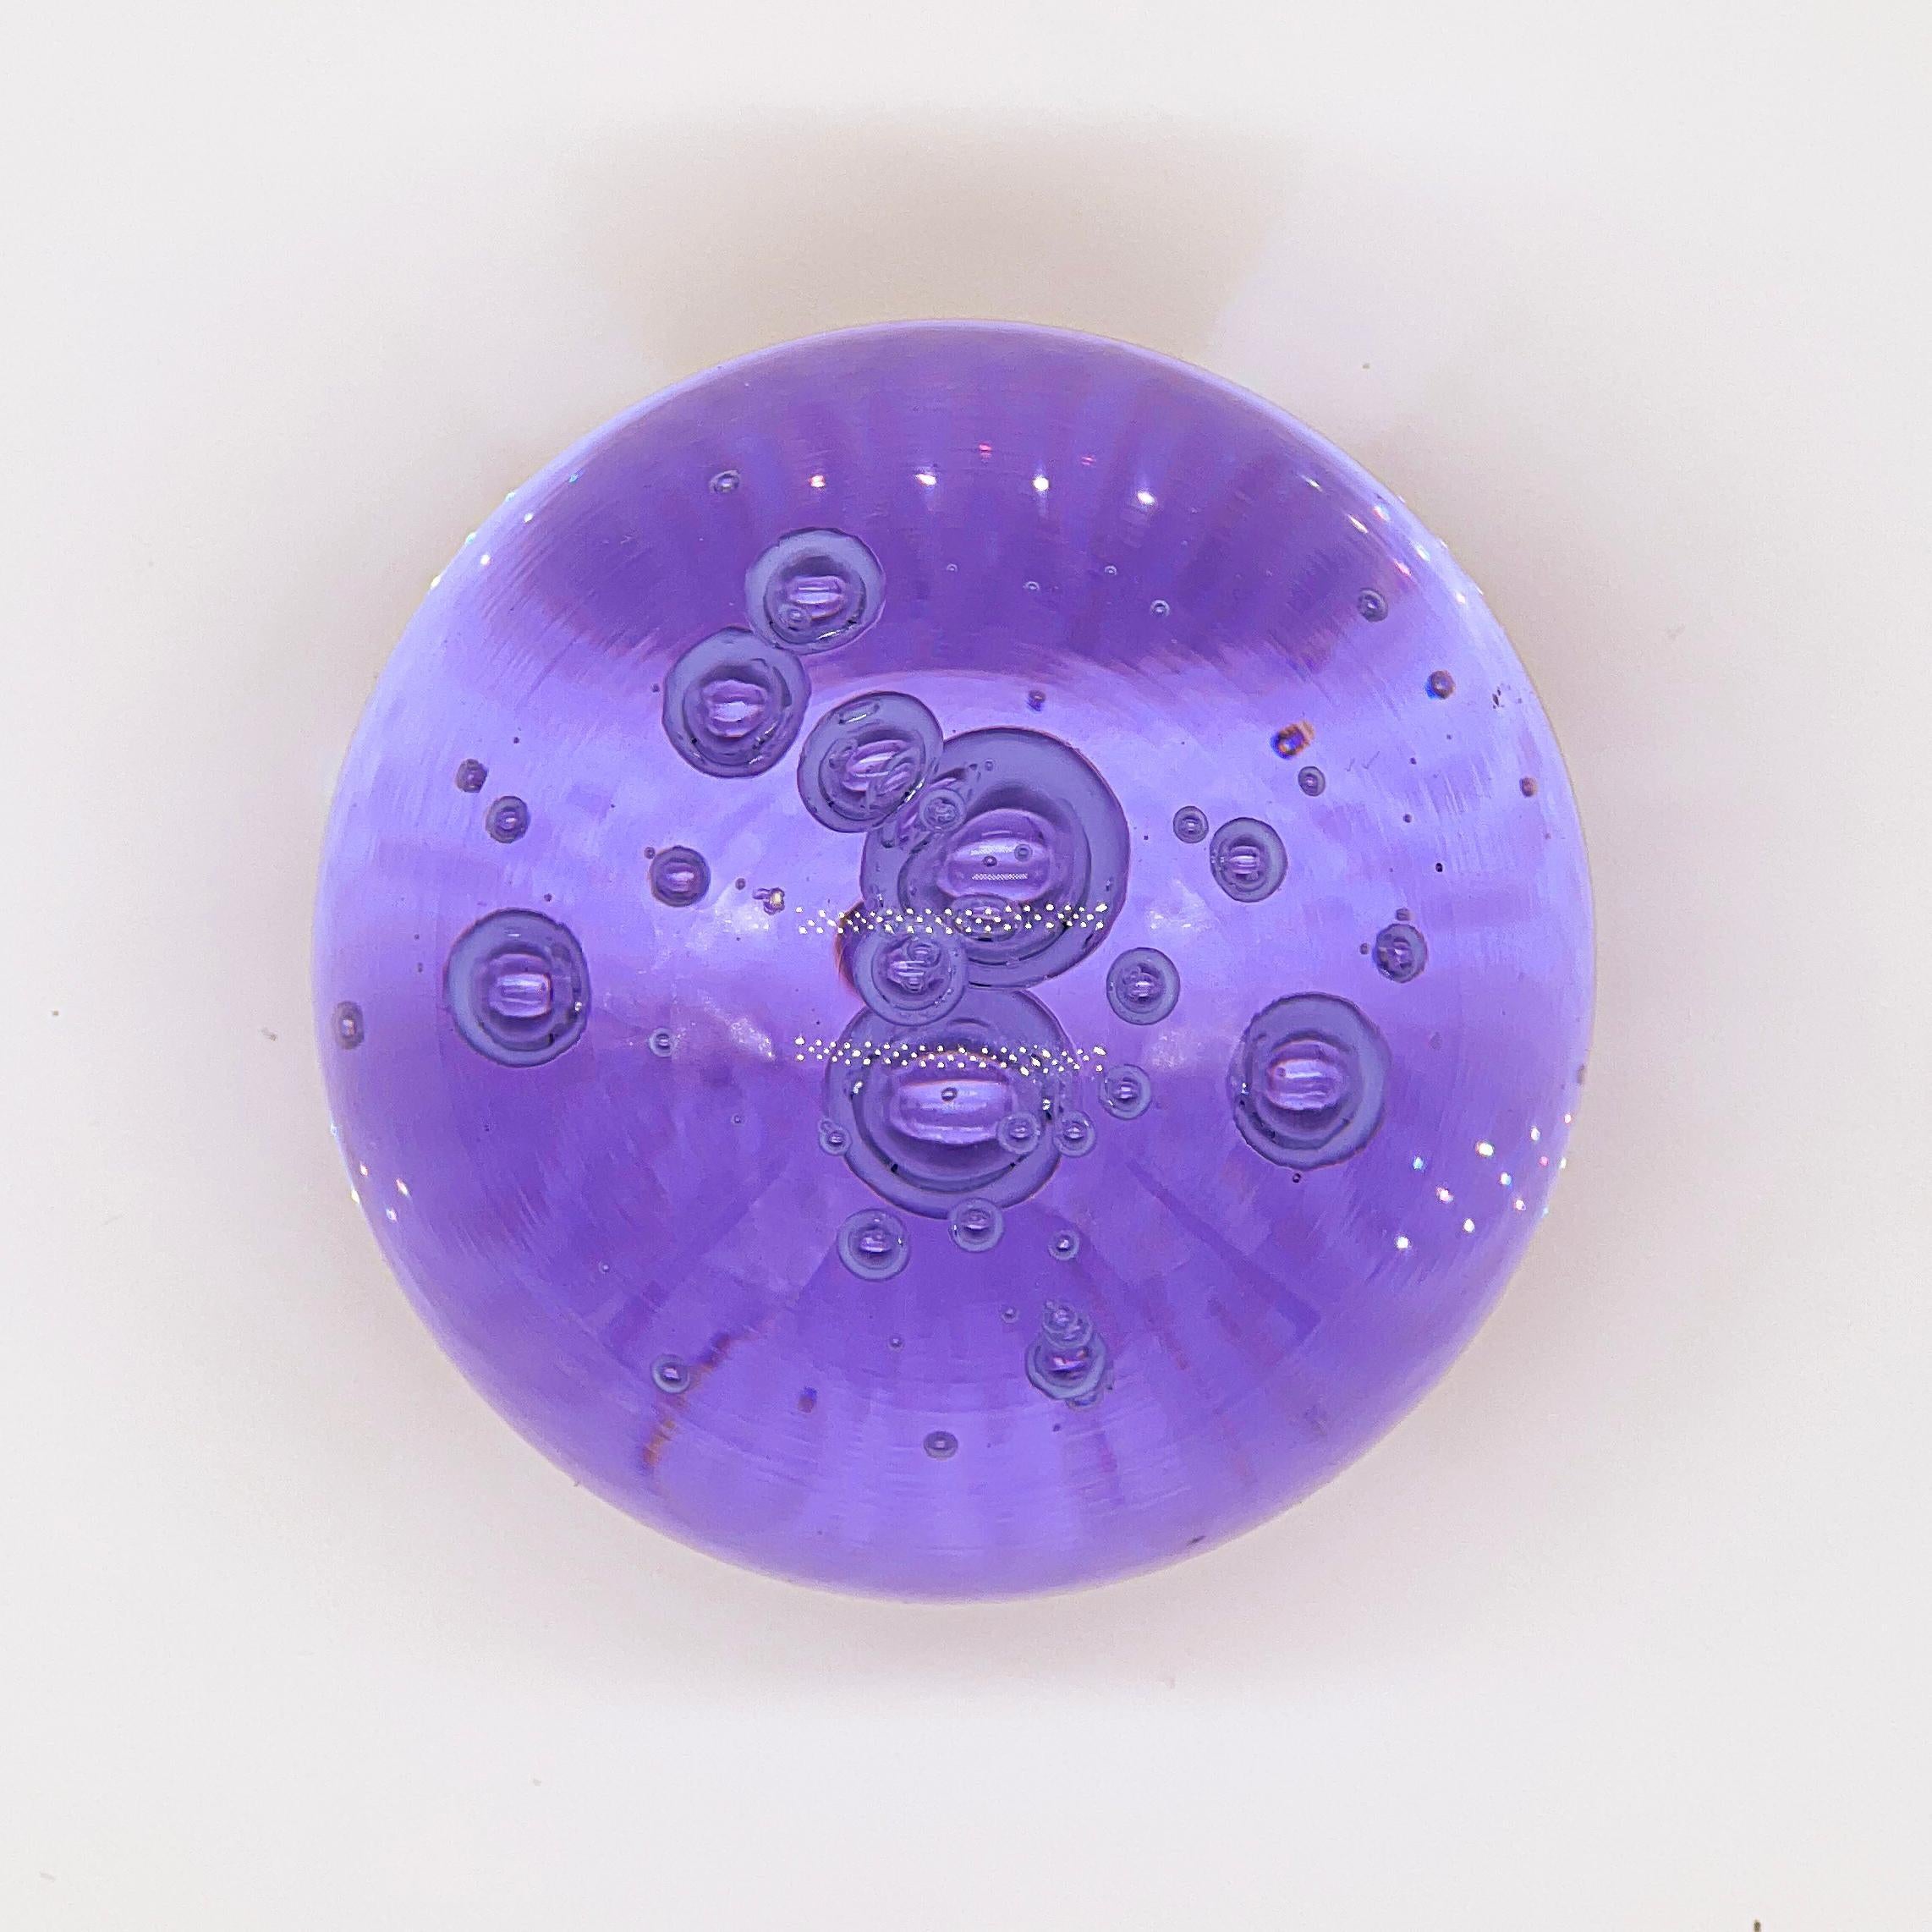 Presse-papier Vintage Murano en forme de sphère avec un fond plat pour le faire tenir debout. Réalisé dans un verre violet profond et vibrant, il présente des bulles incluses qui lui confèrent profondeur et volume. C'est un objet très attrayant qui